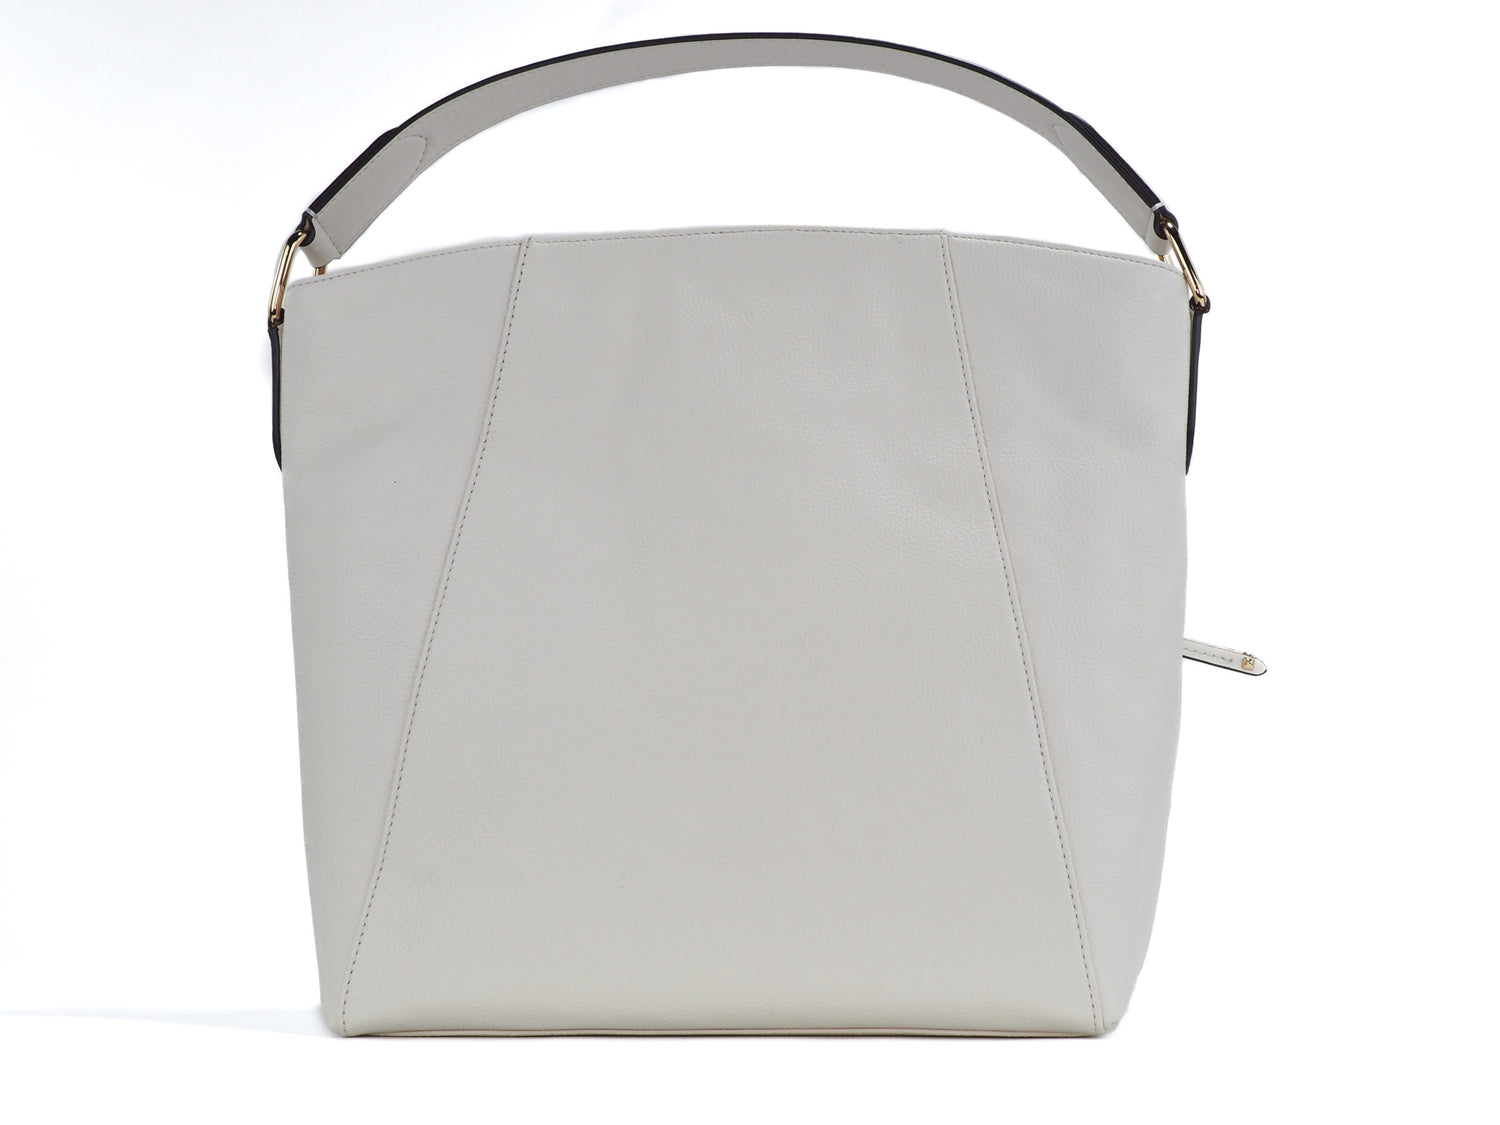 Evie Large Pebbled Leather Hobo Shoulder Bag Handbag (Light Cream)